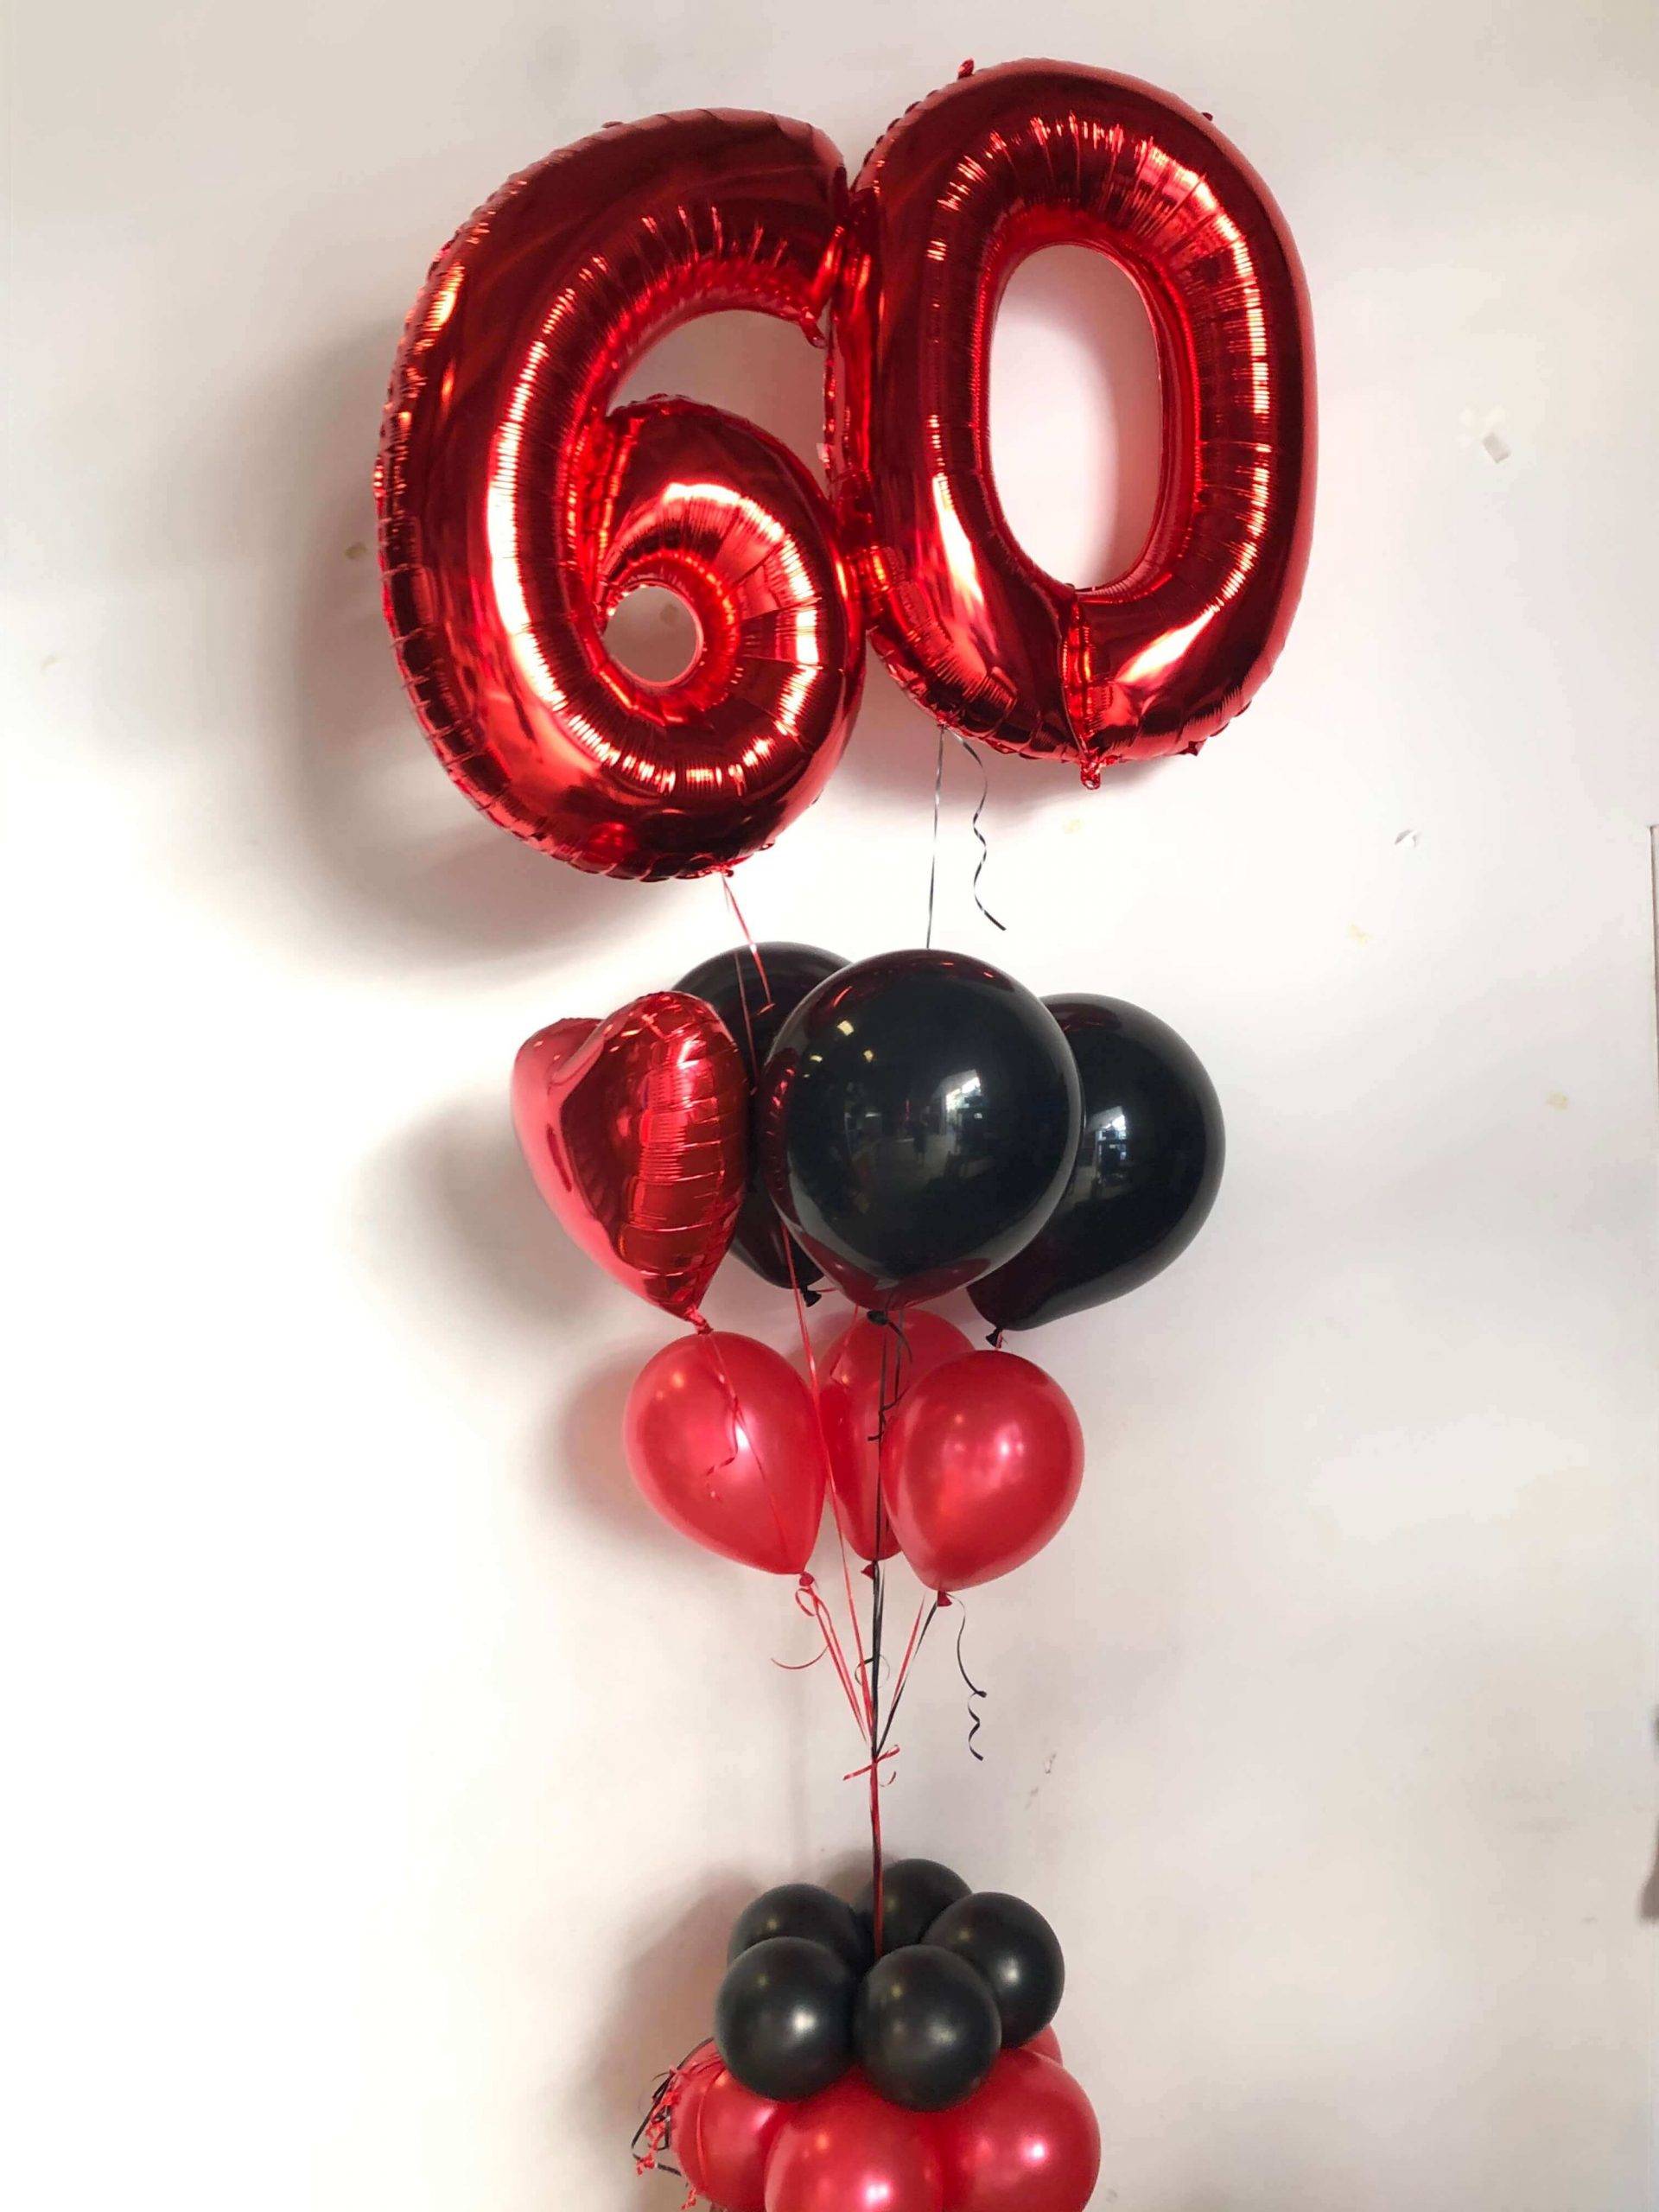 Surtido de globos cumpleaños 60. Ramilletes ya listos para tus cumples